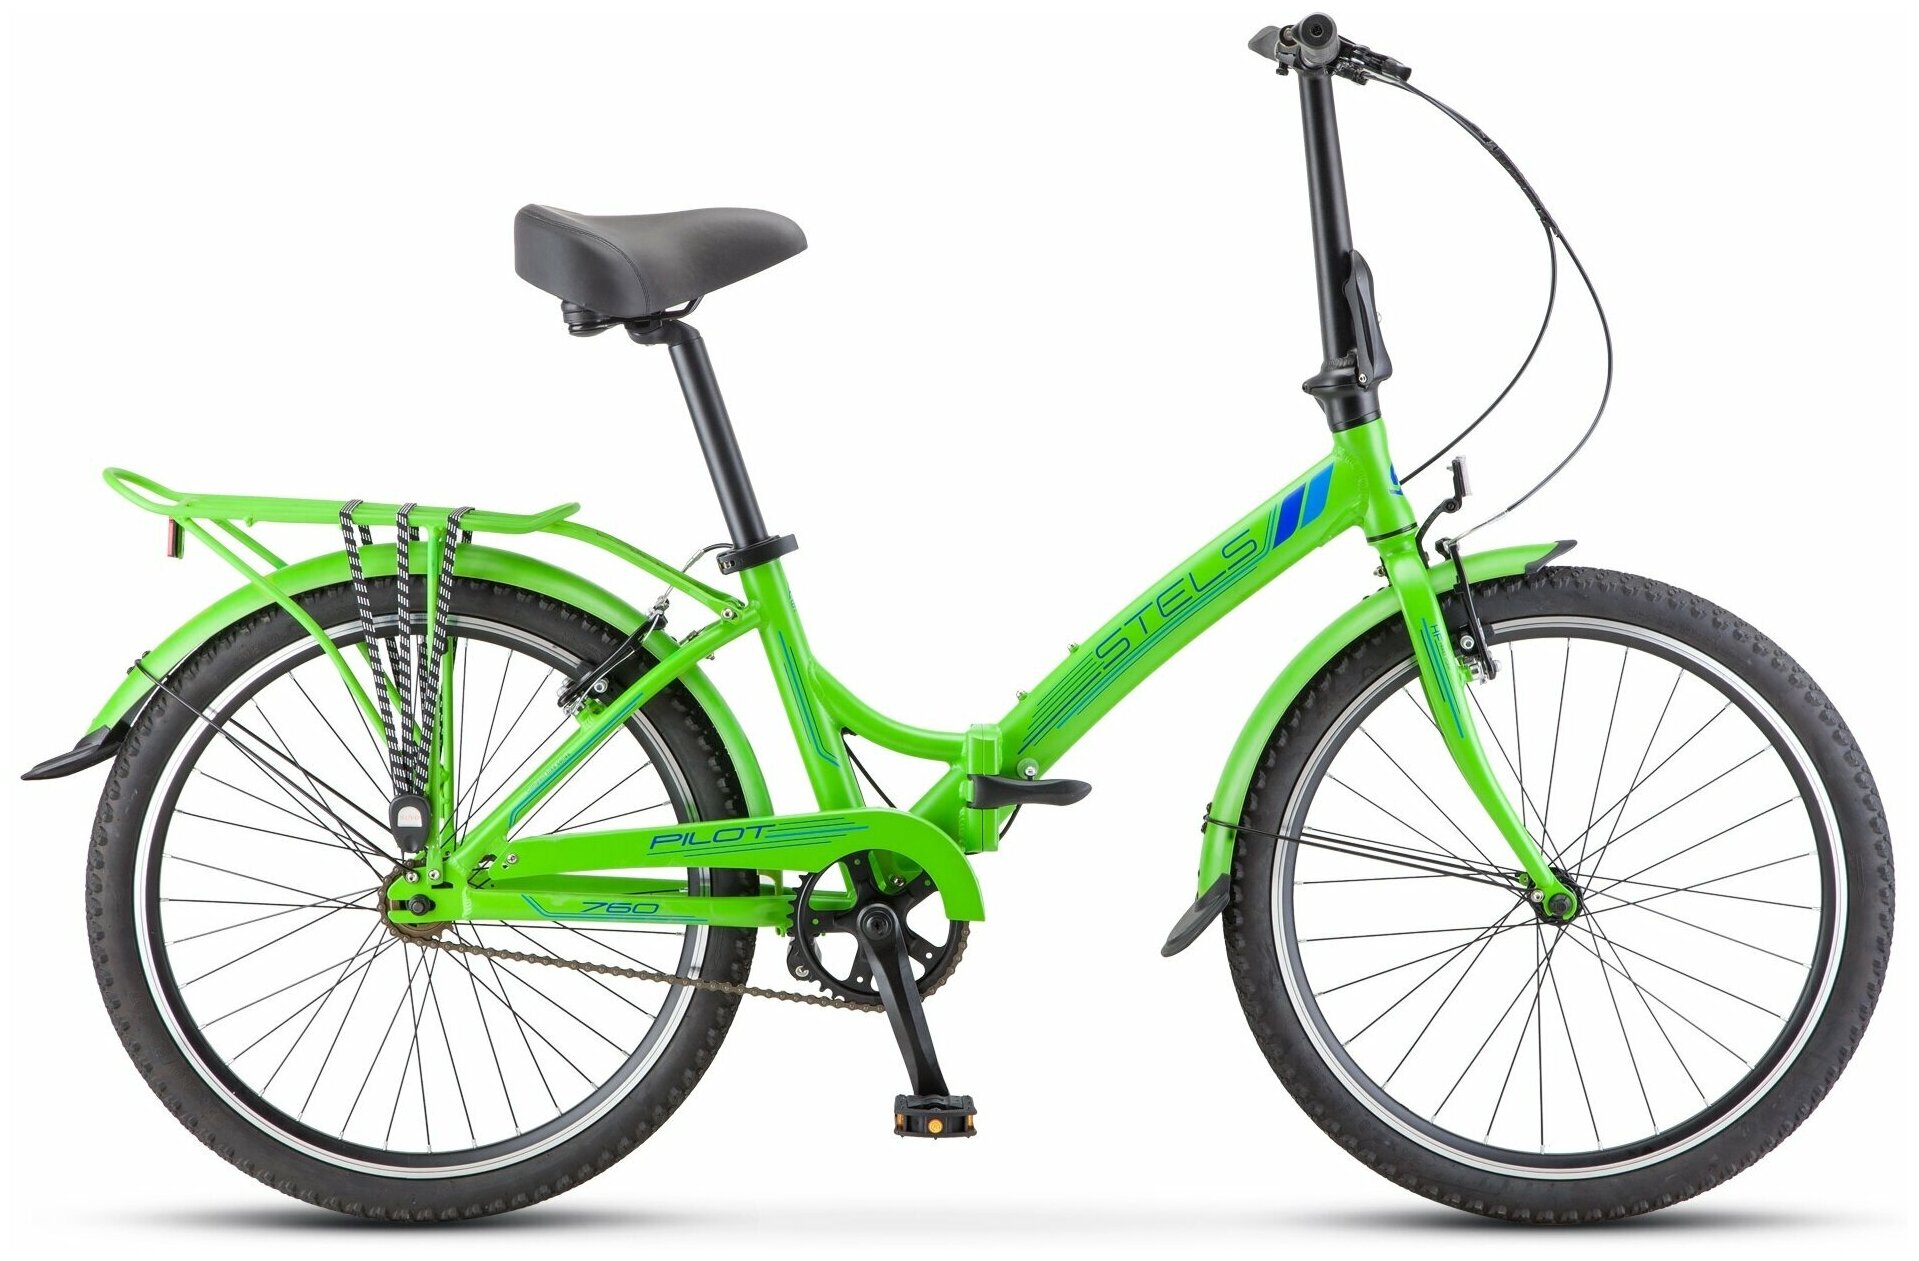 Городской велосипед Stels Pilot 760 24 V020 (2021) 14 салатовый (требует финальной сборки)